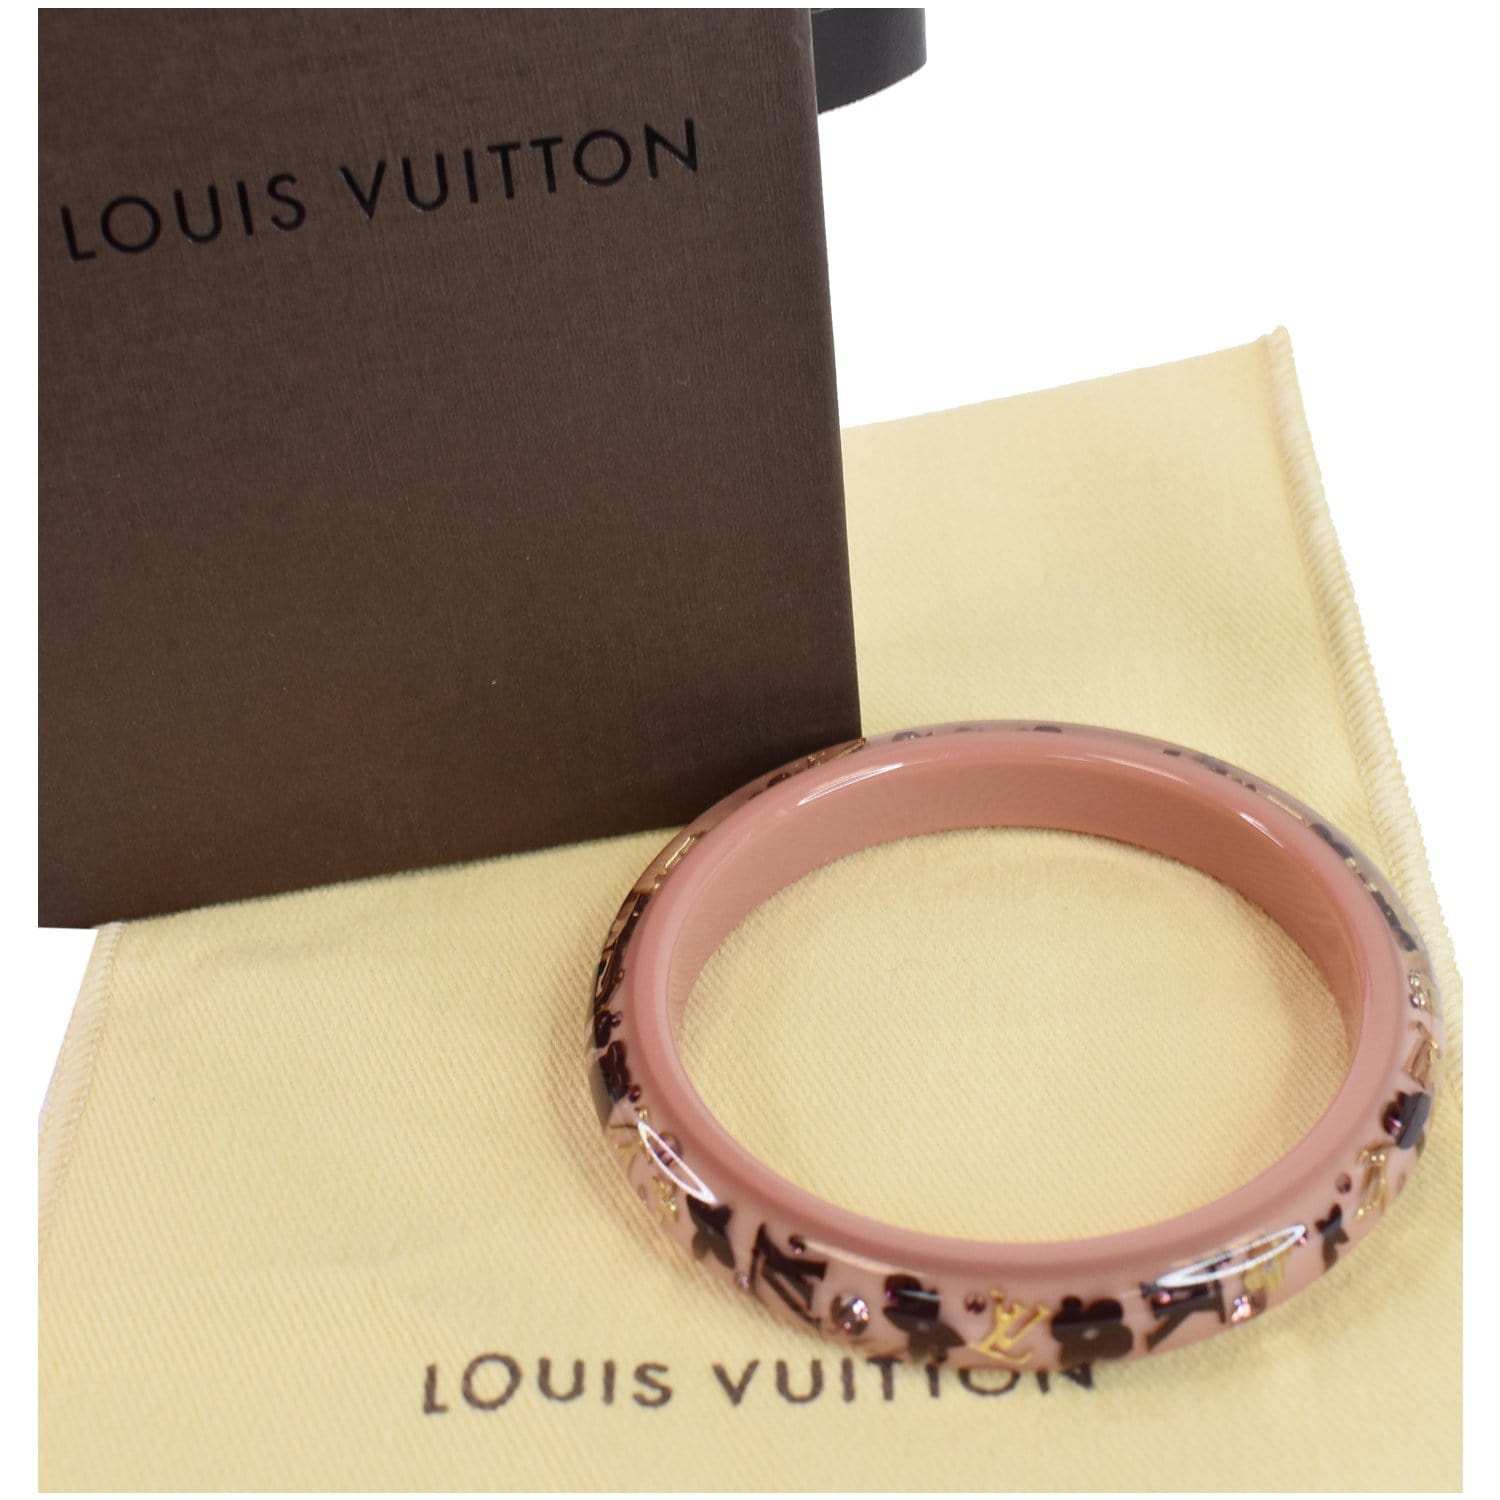 Louis Vuitton Authenticated Inclusion Bracelet